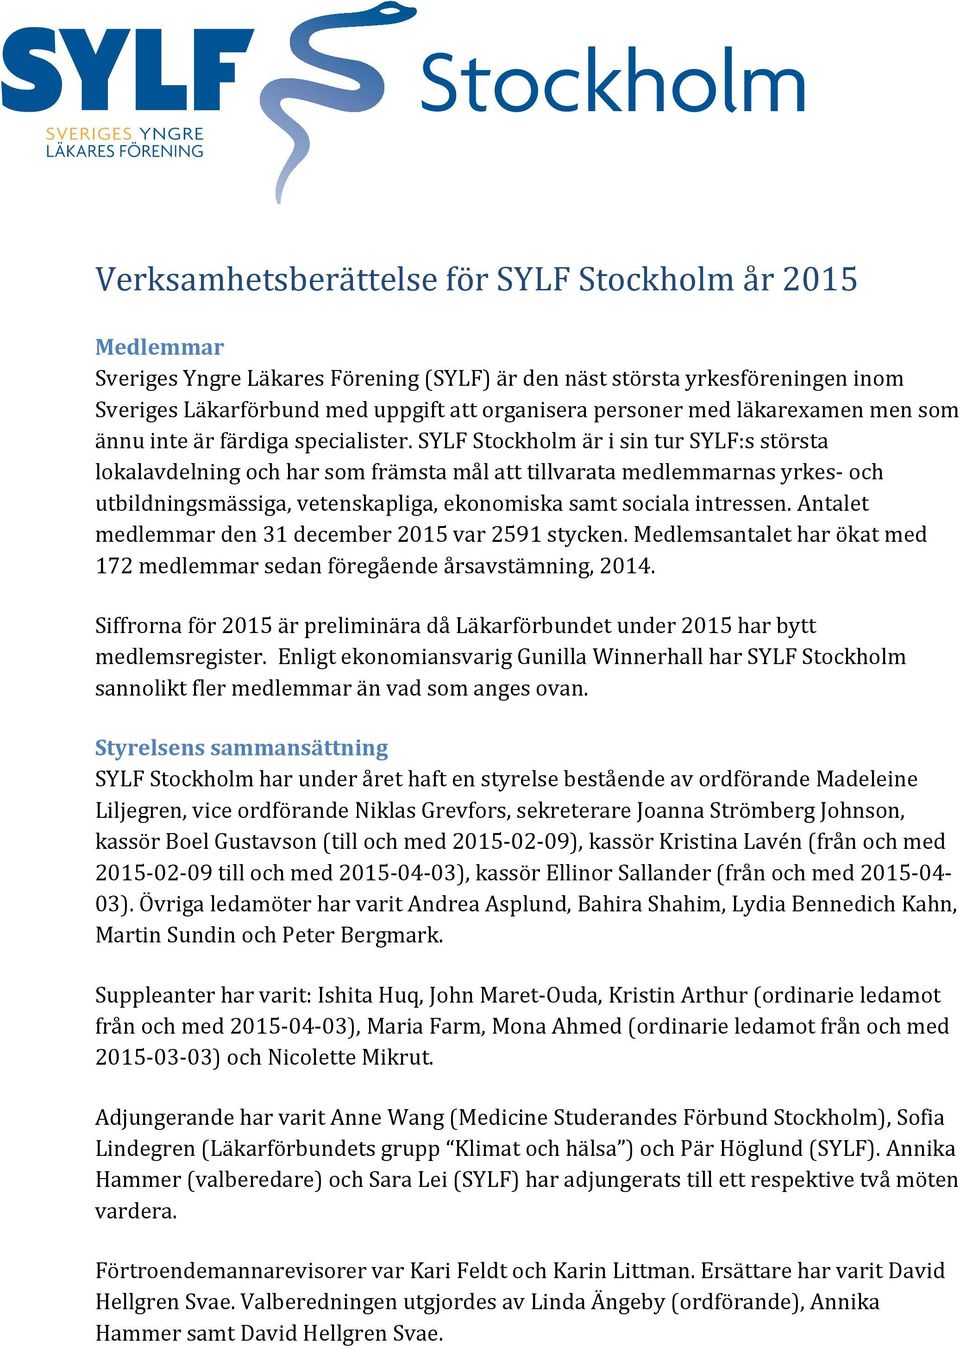 SYLF Stockholm är i sin tur SYLF:s största lokalavdelning och har som främsta mål att tillvarata medlemmarnas yrkes- och utbildningsmässiga, vetenskapliga, ekonomiska samt sociala intressen.